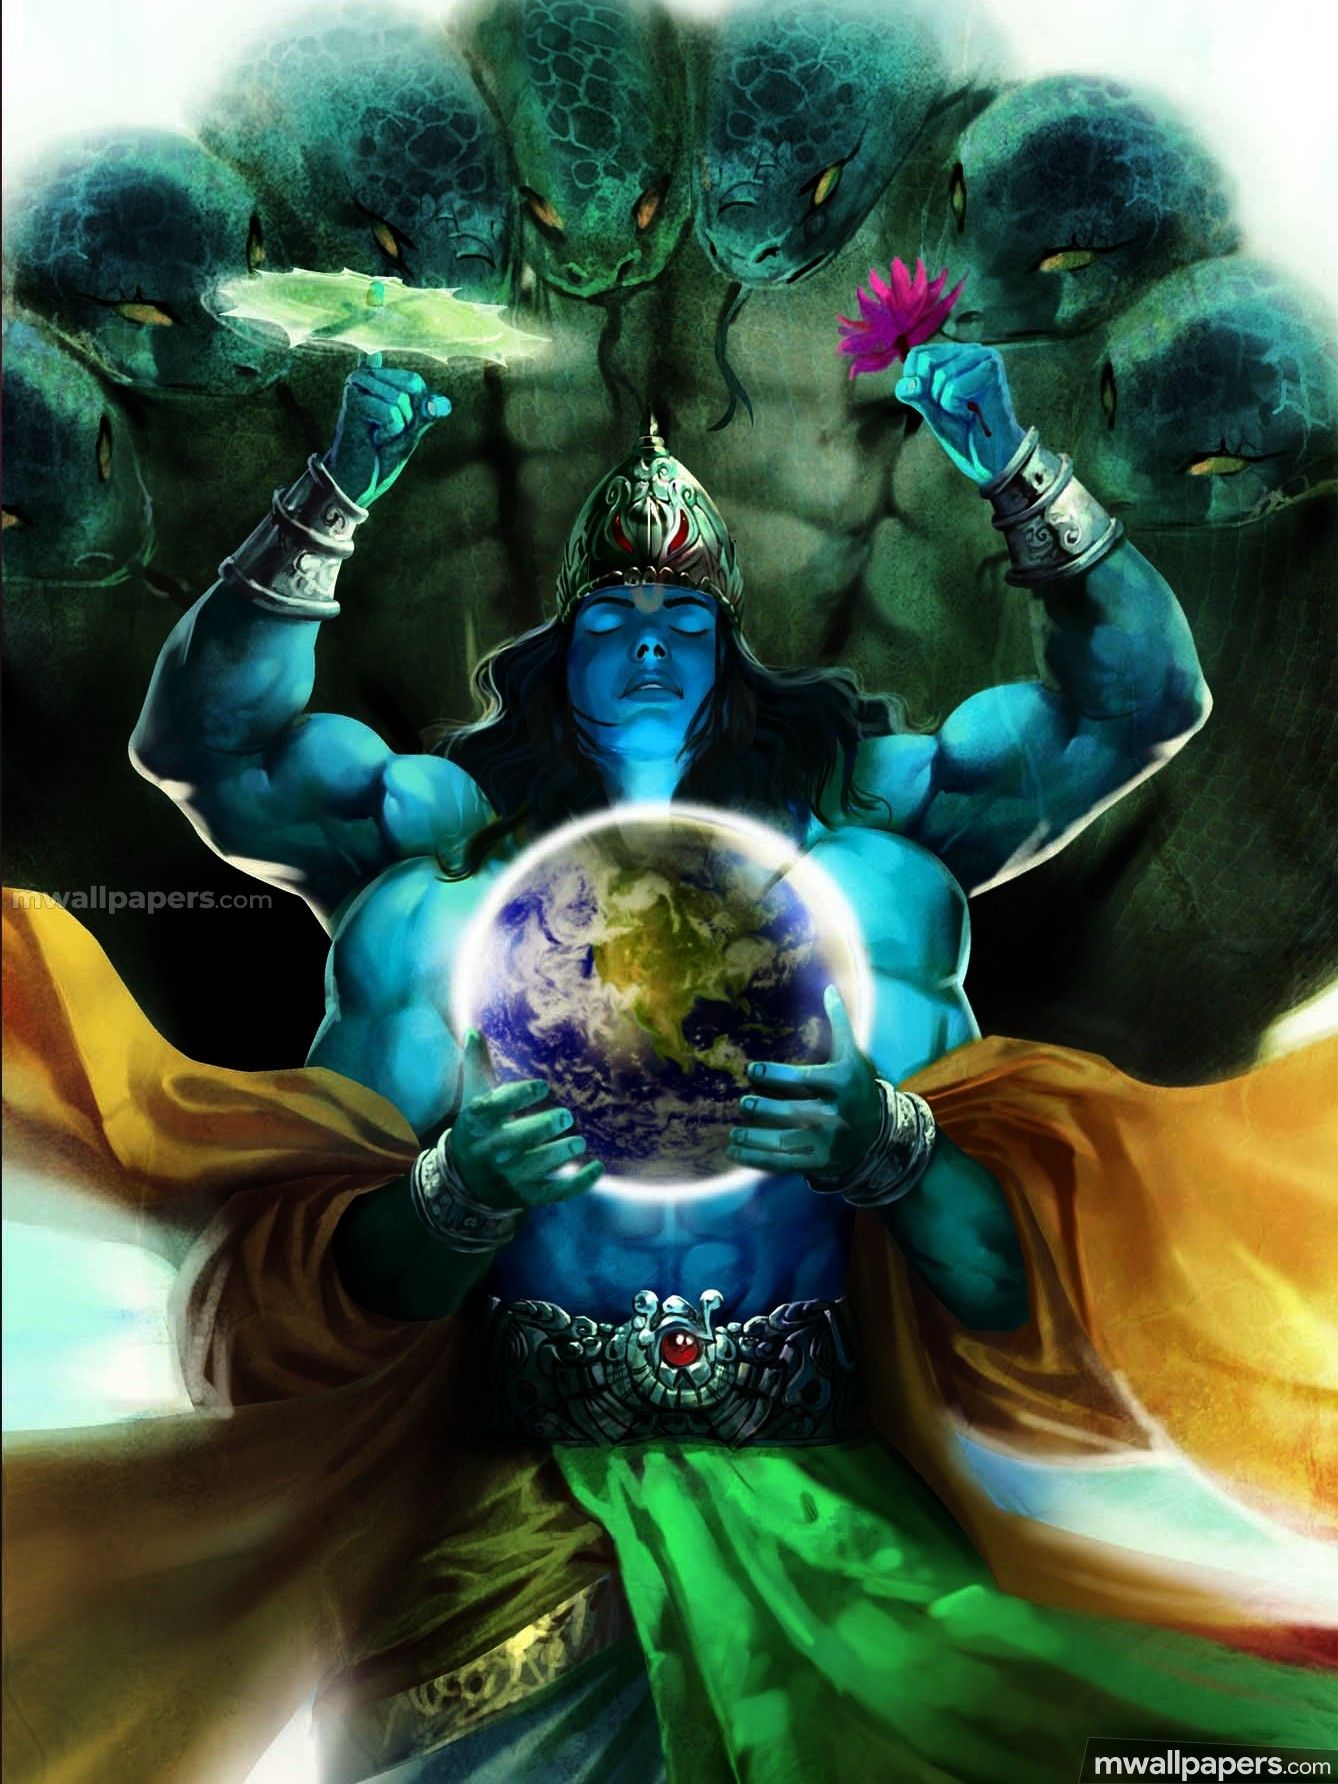 22+] Angry Vishnu Wallpapers - WallpaperSafari